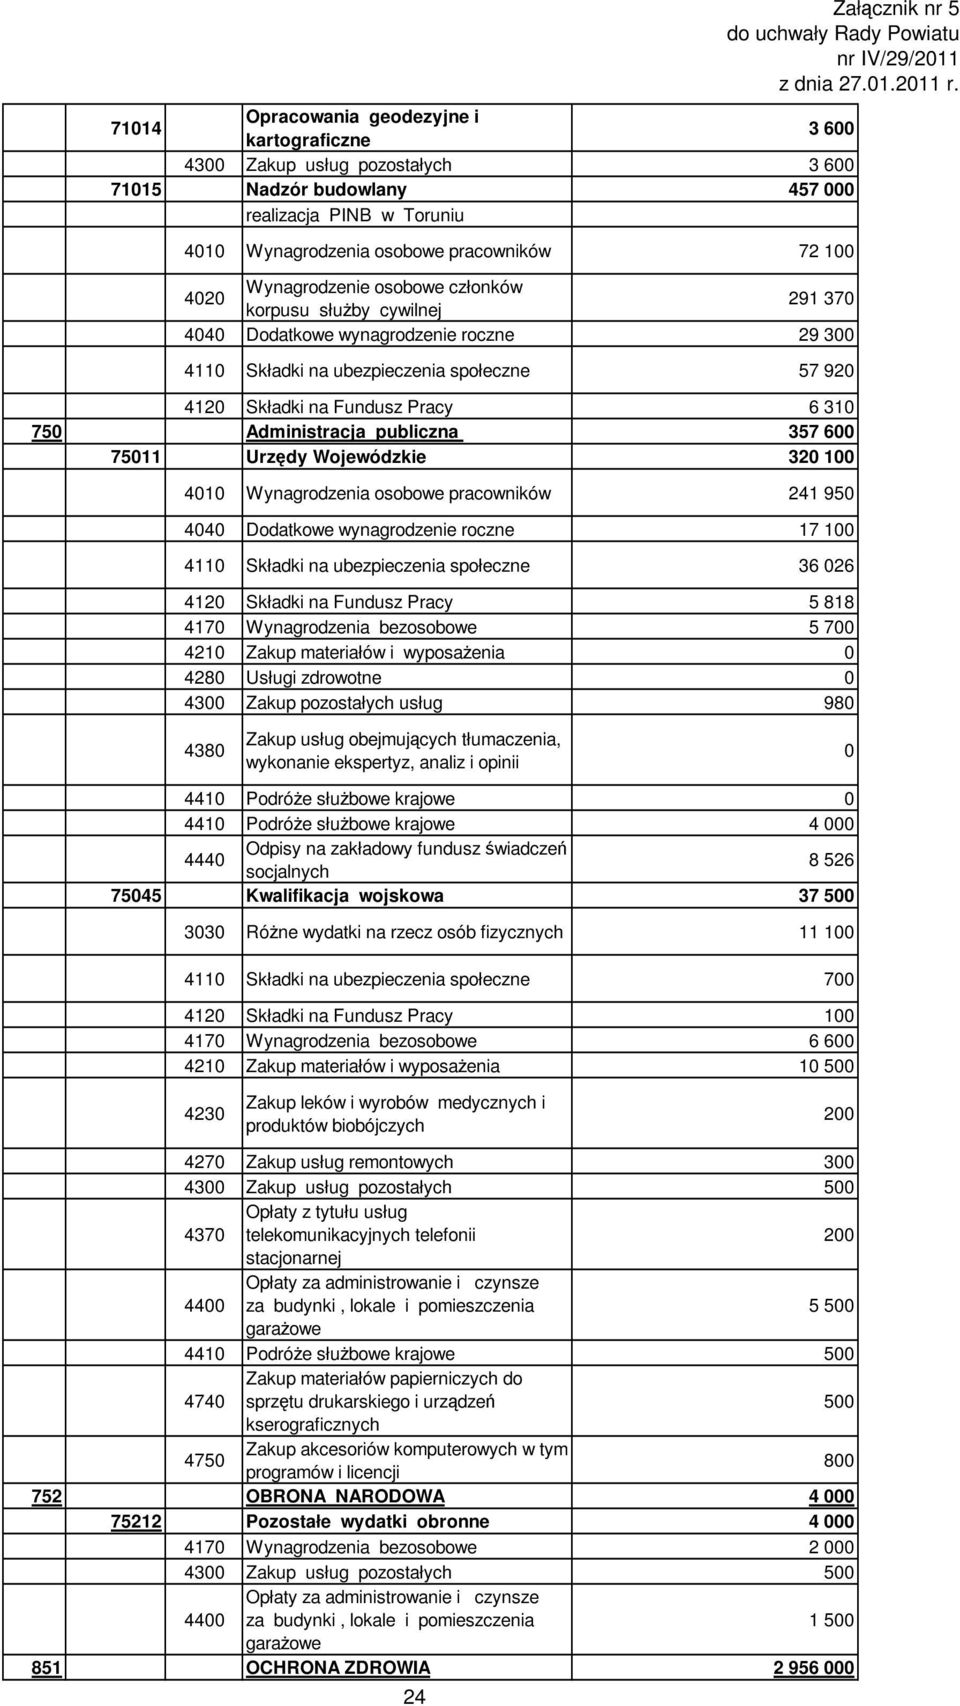 Urzędy Wojewódzkie 32 1 41 Wynagrodzenia osobowe pracowników 241 95 44 Dodatkowe wynagrodzenie roczne 17 1 411 Składki na ubezpieczenia społeczne 36 26 412 Składki na Fundusz Pracy 5 818 417